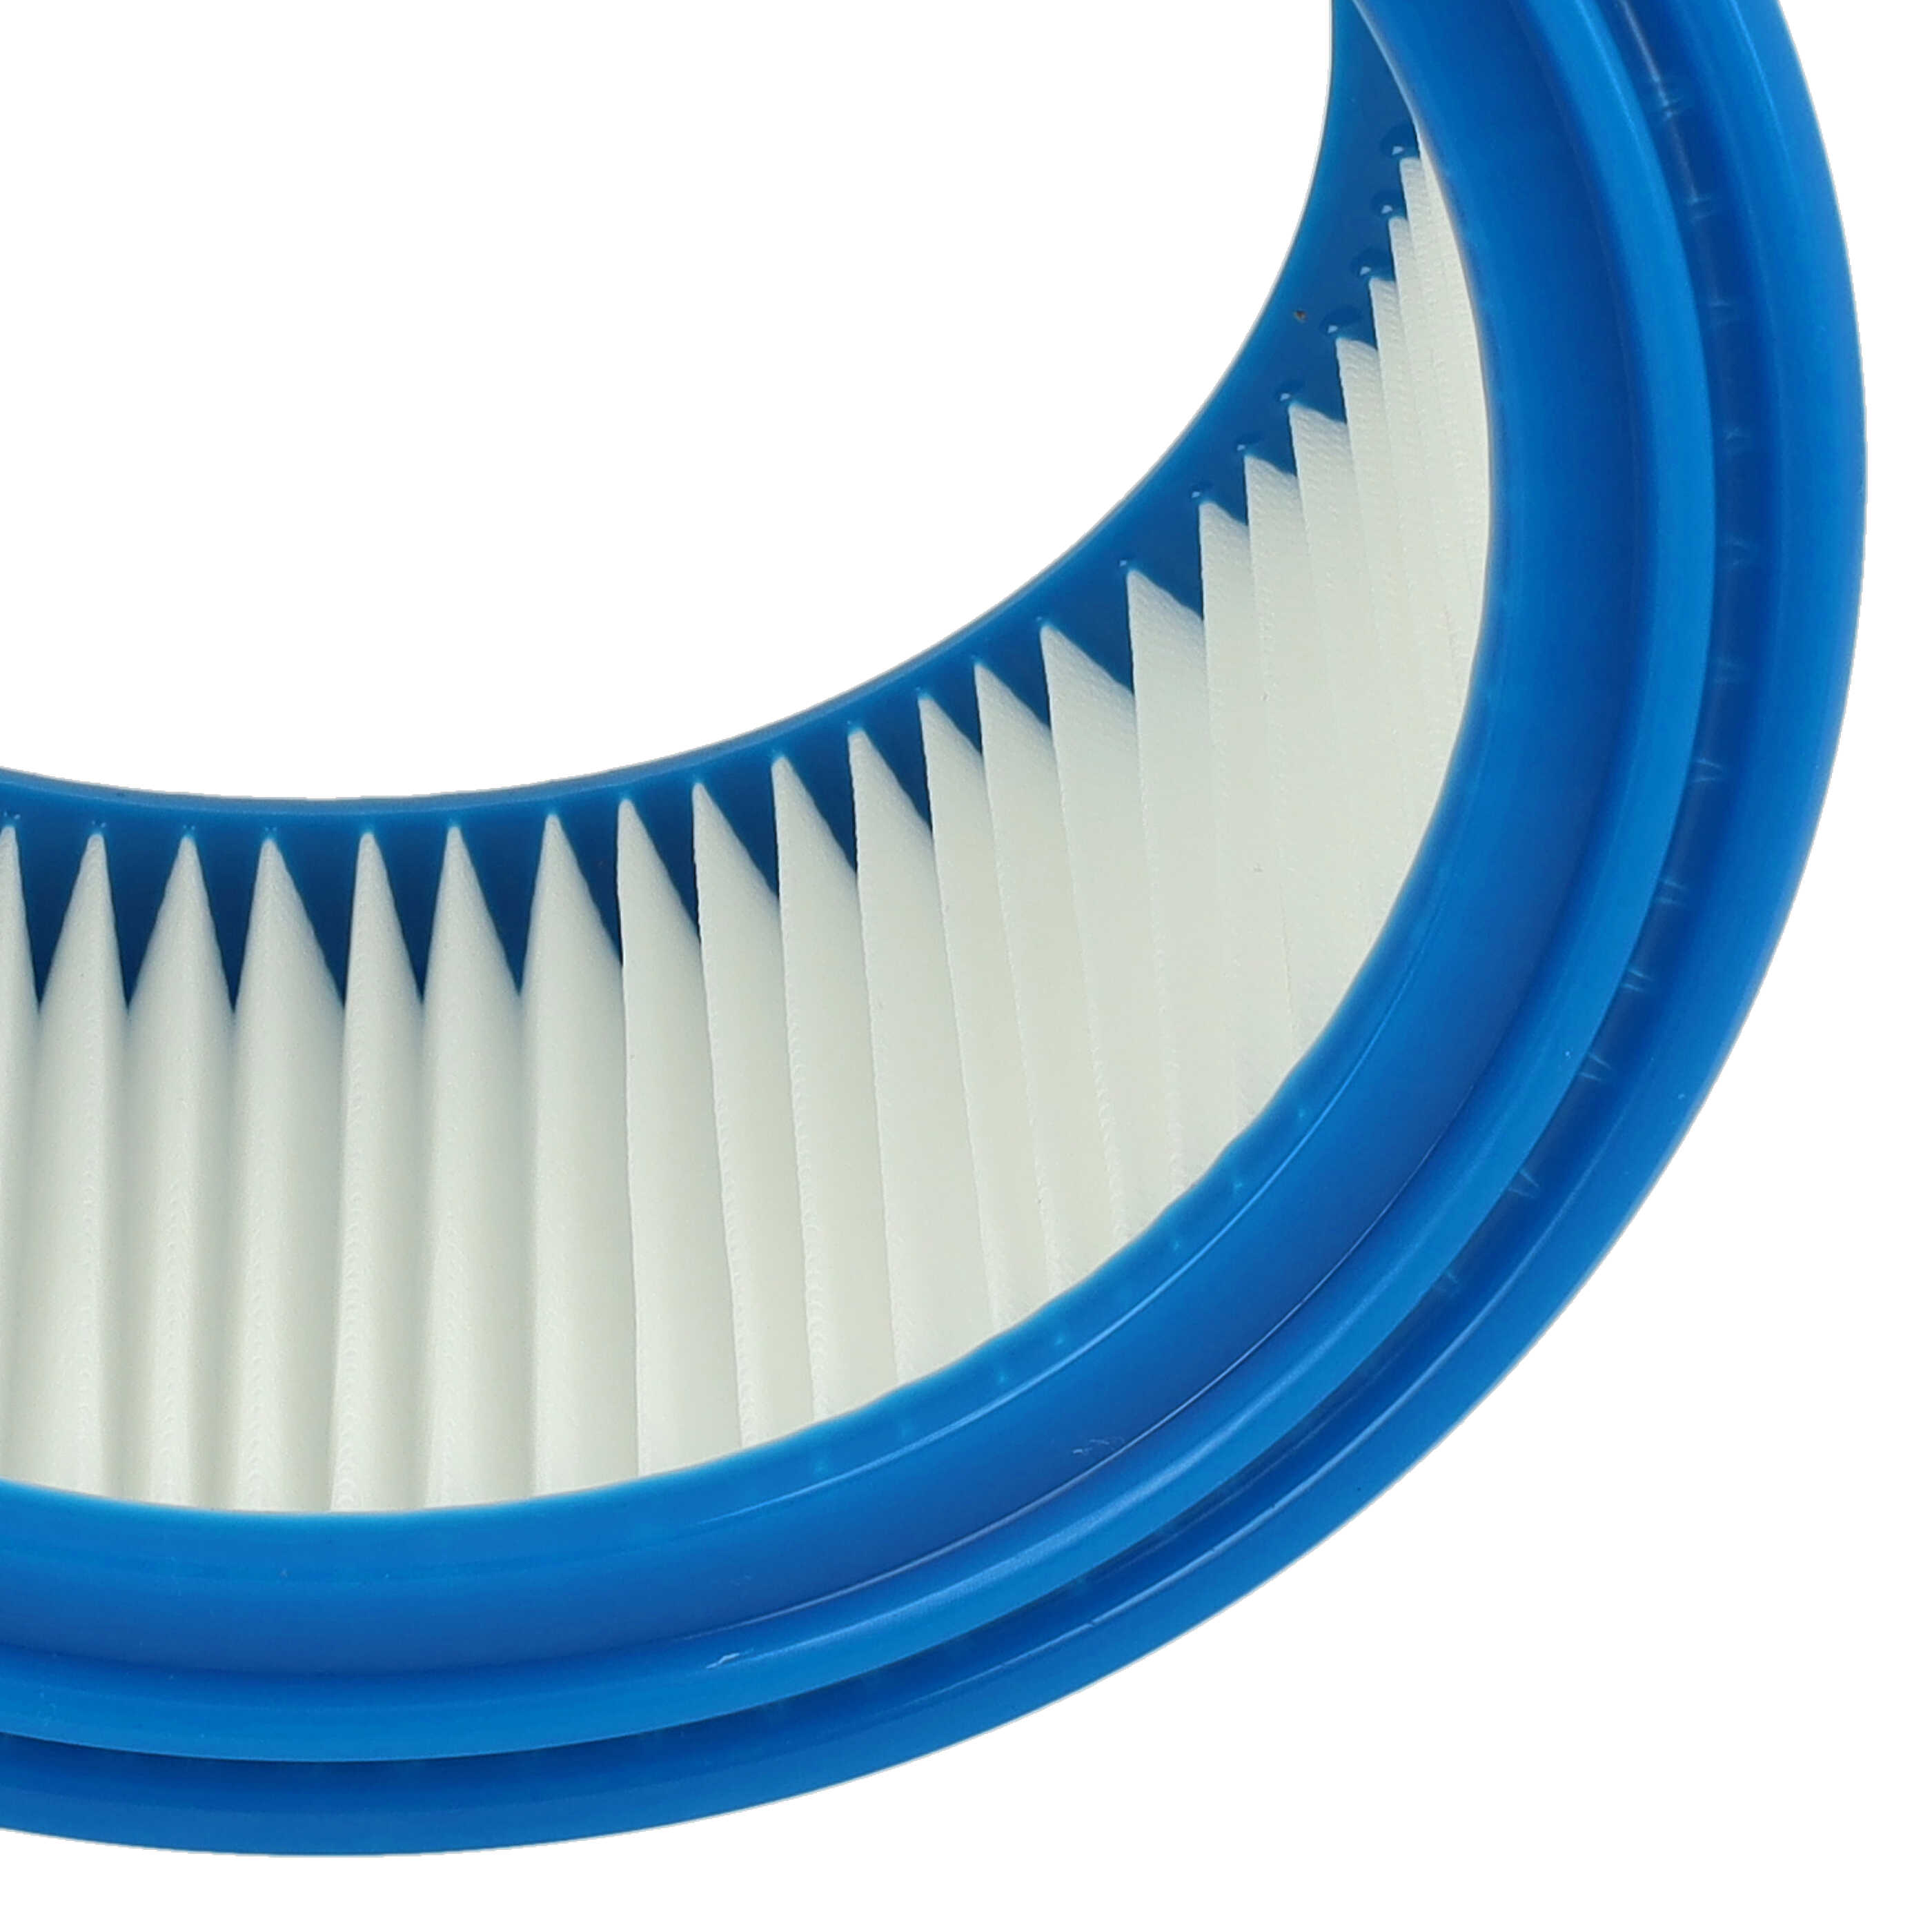 2x Filtro sostituisce Bosch 2607432024 per aspirapolvere - filtro rotondo, bianco / blu